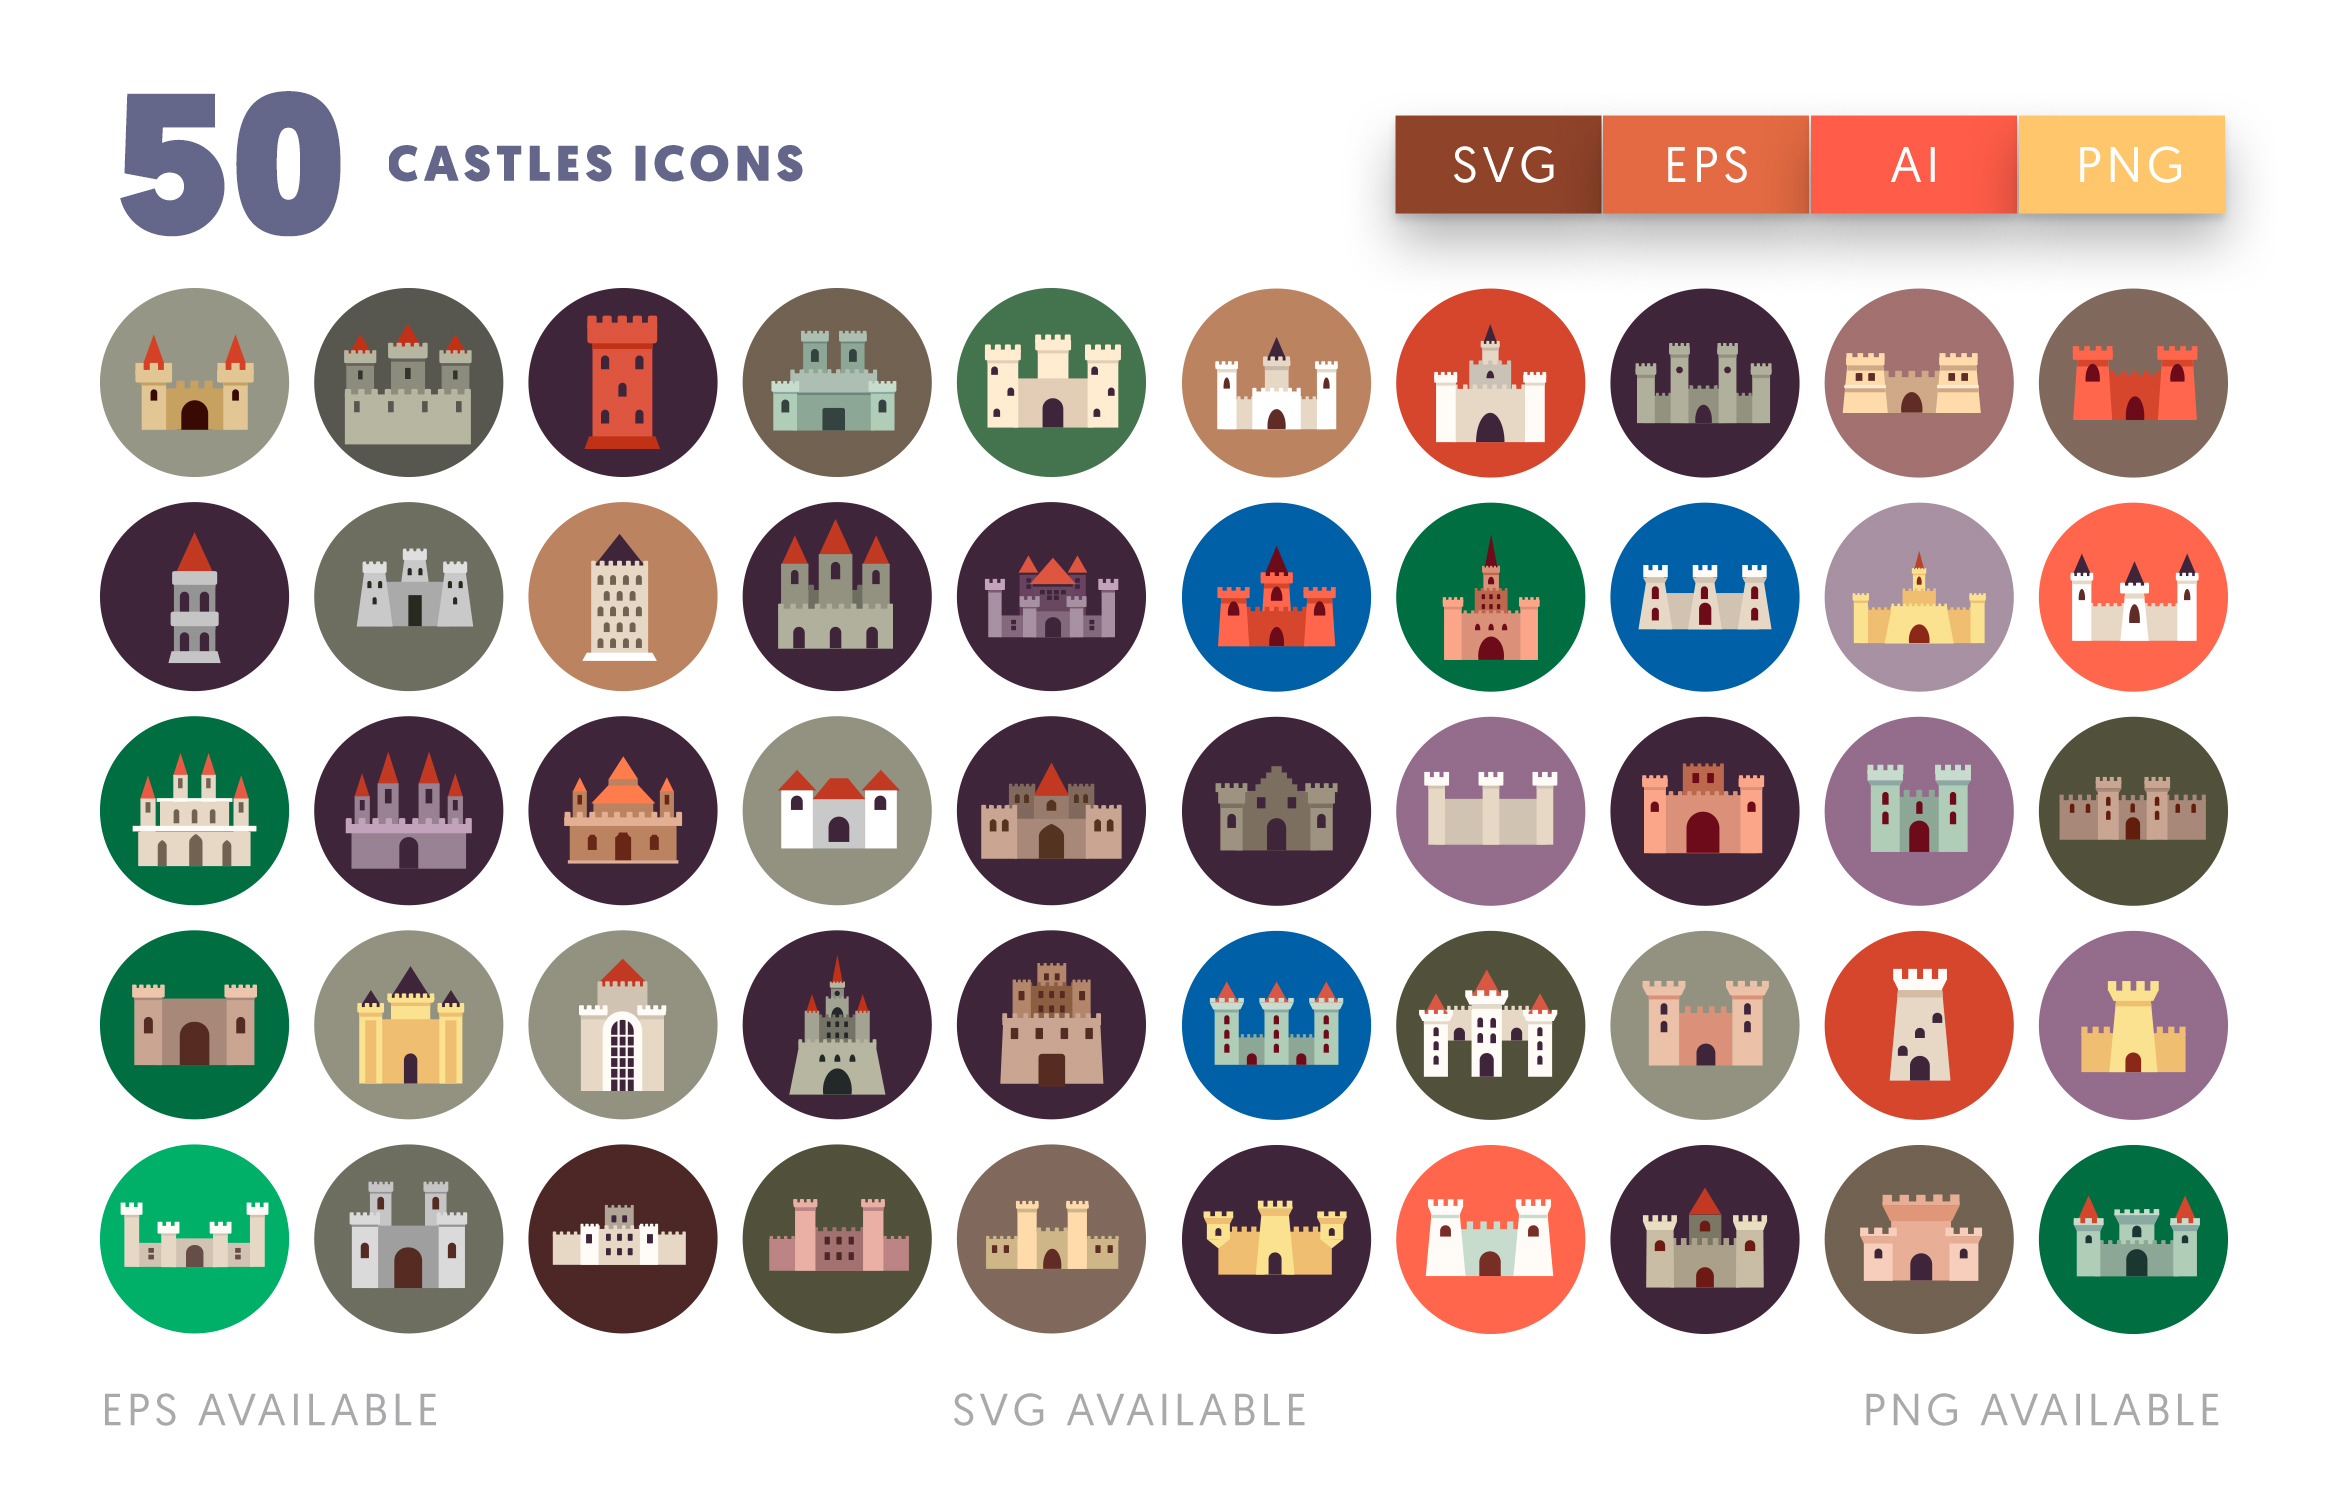 50 Castle Icons